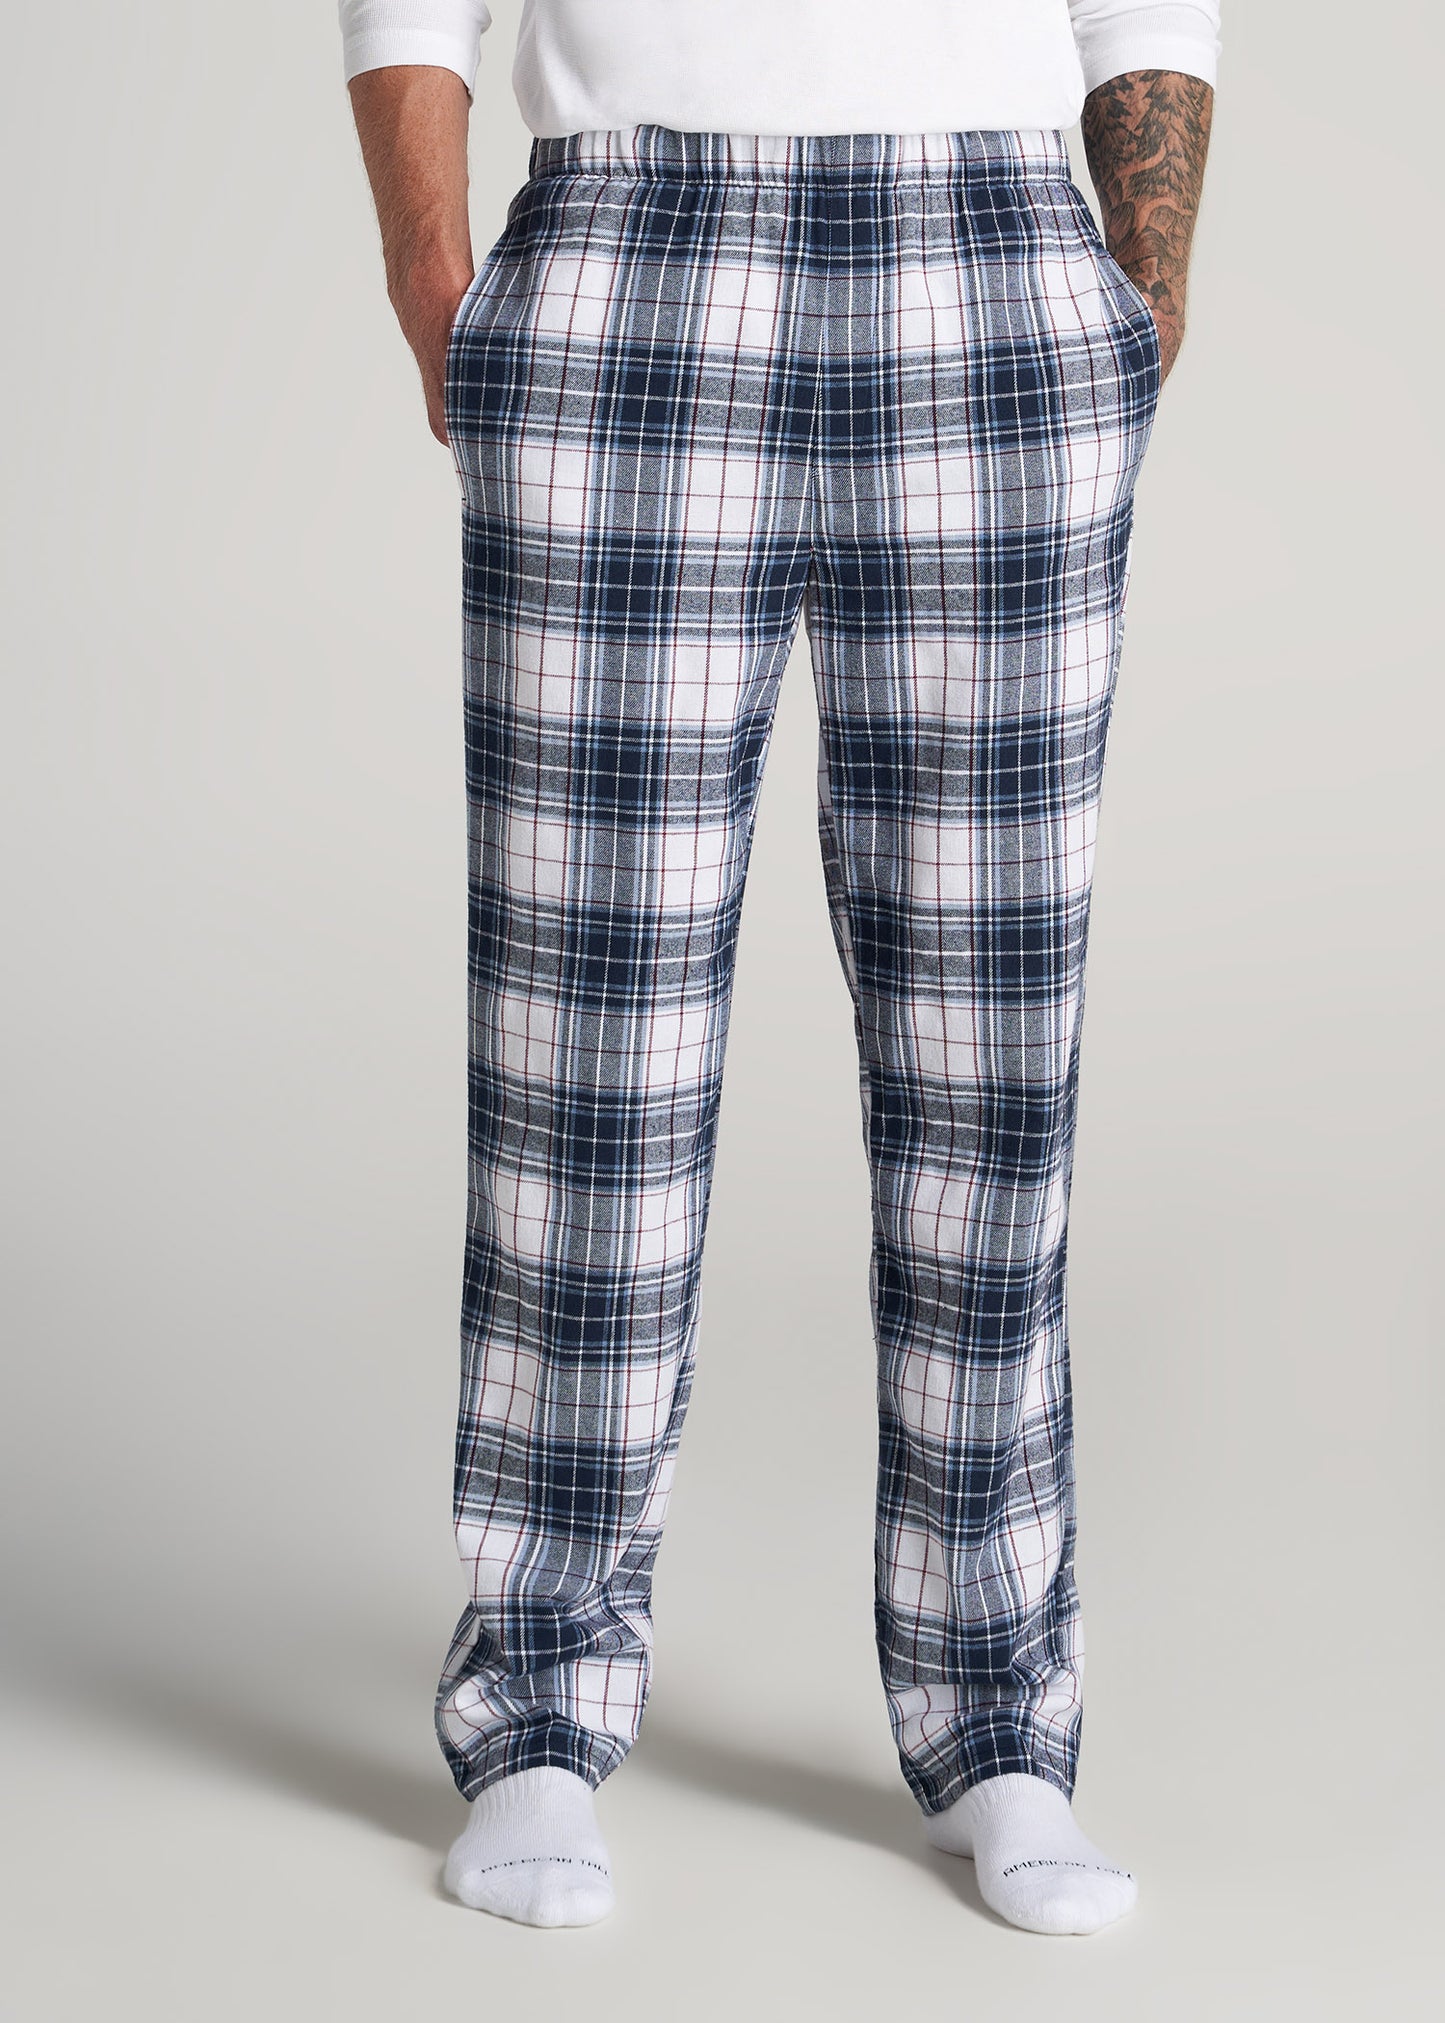 Amazon.com: Ekouaer Boys Pajama Pants 3 Pack Sleep Pants Soft Elastic Waist  Kids Pajama Bottoms Plaid Lounge Pants with 2 Pockets : Clothing, Shoes &  Jewelry